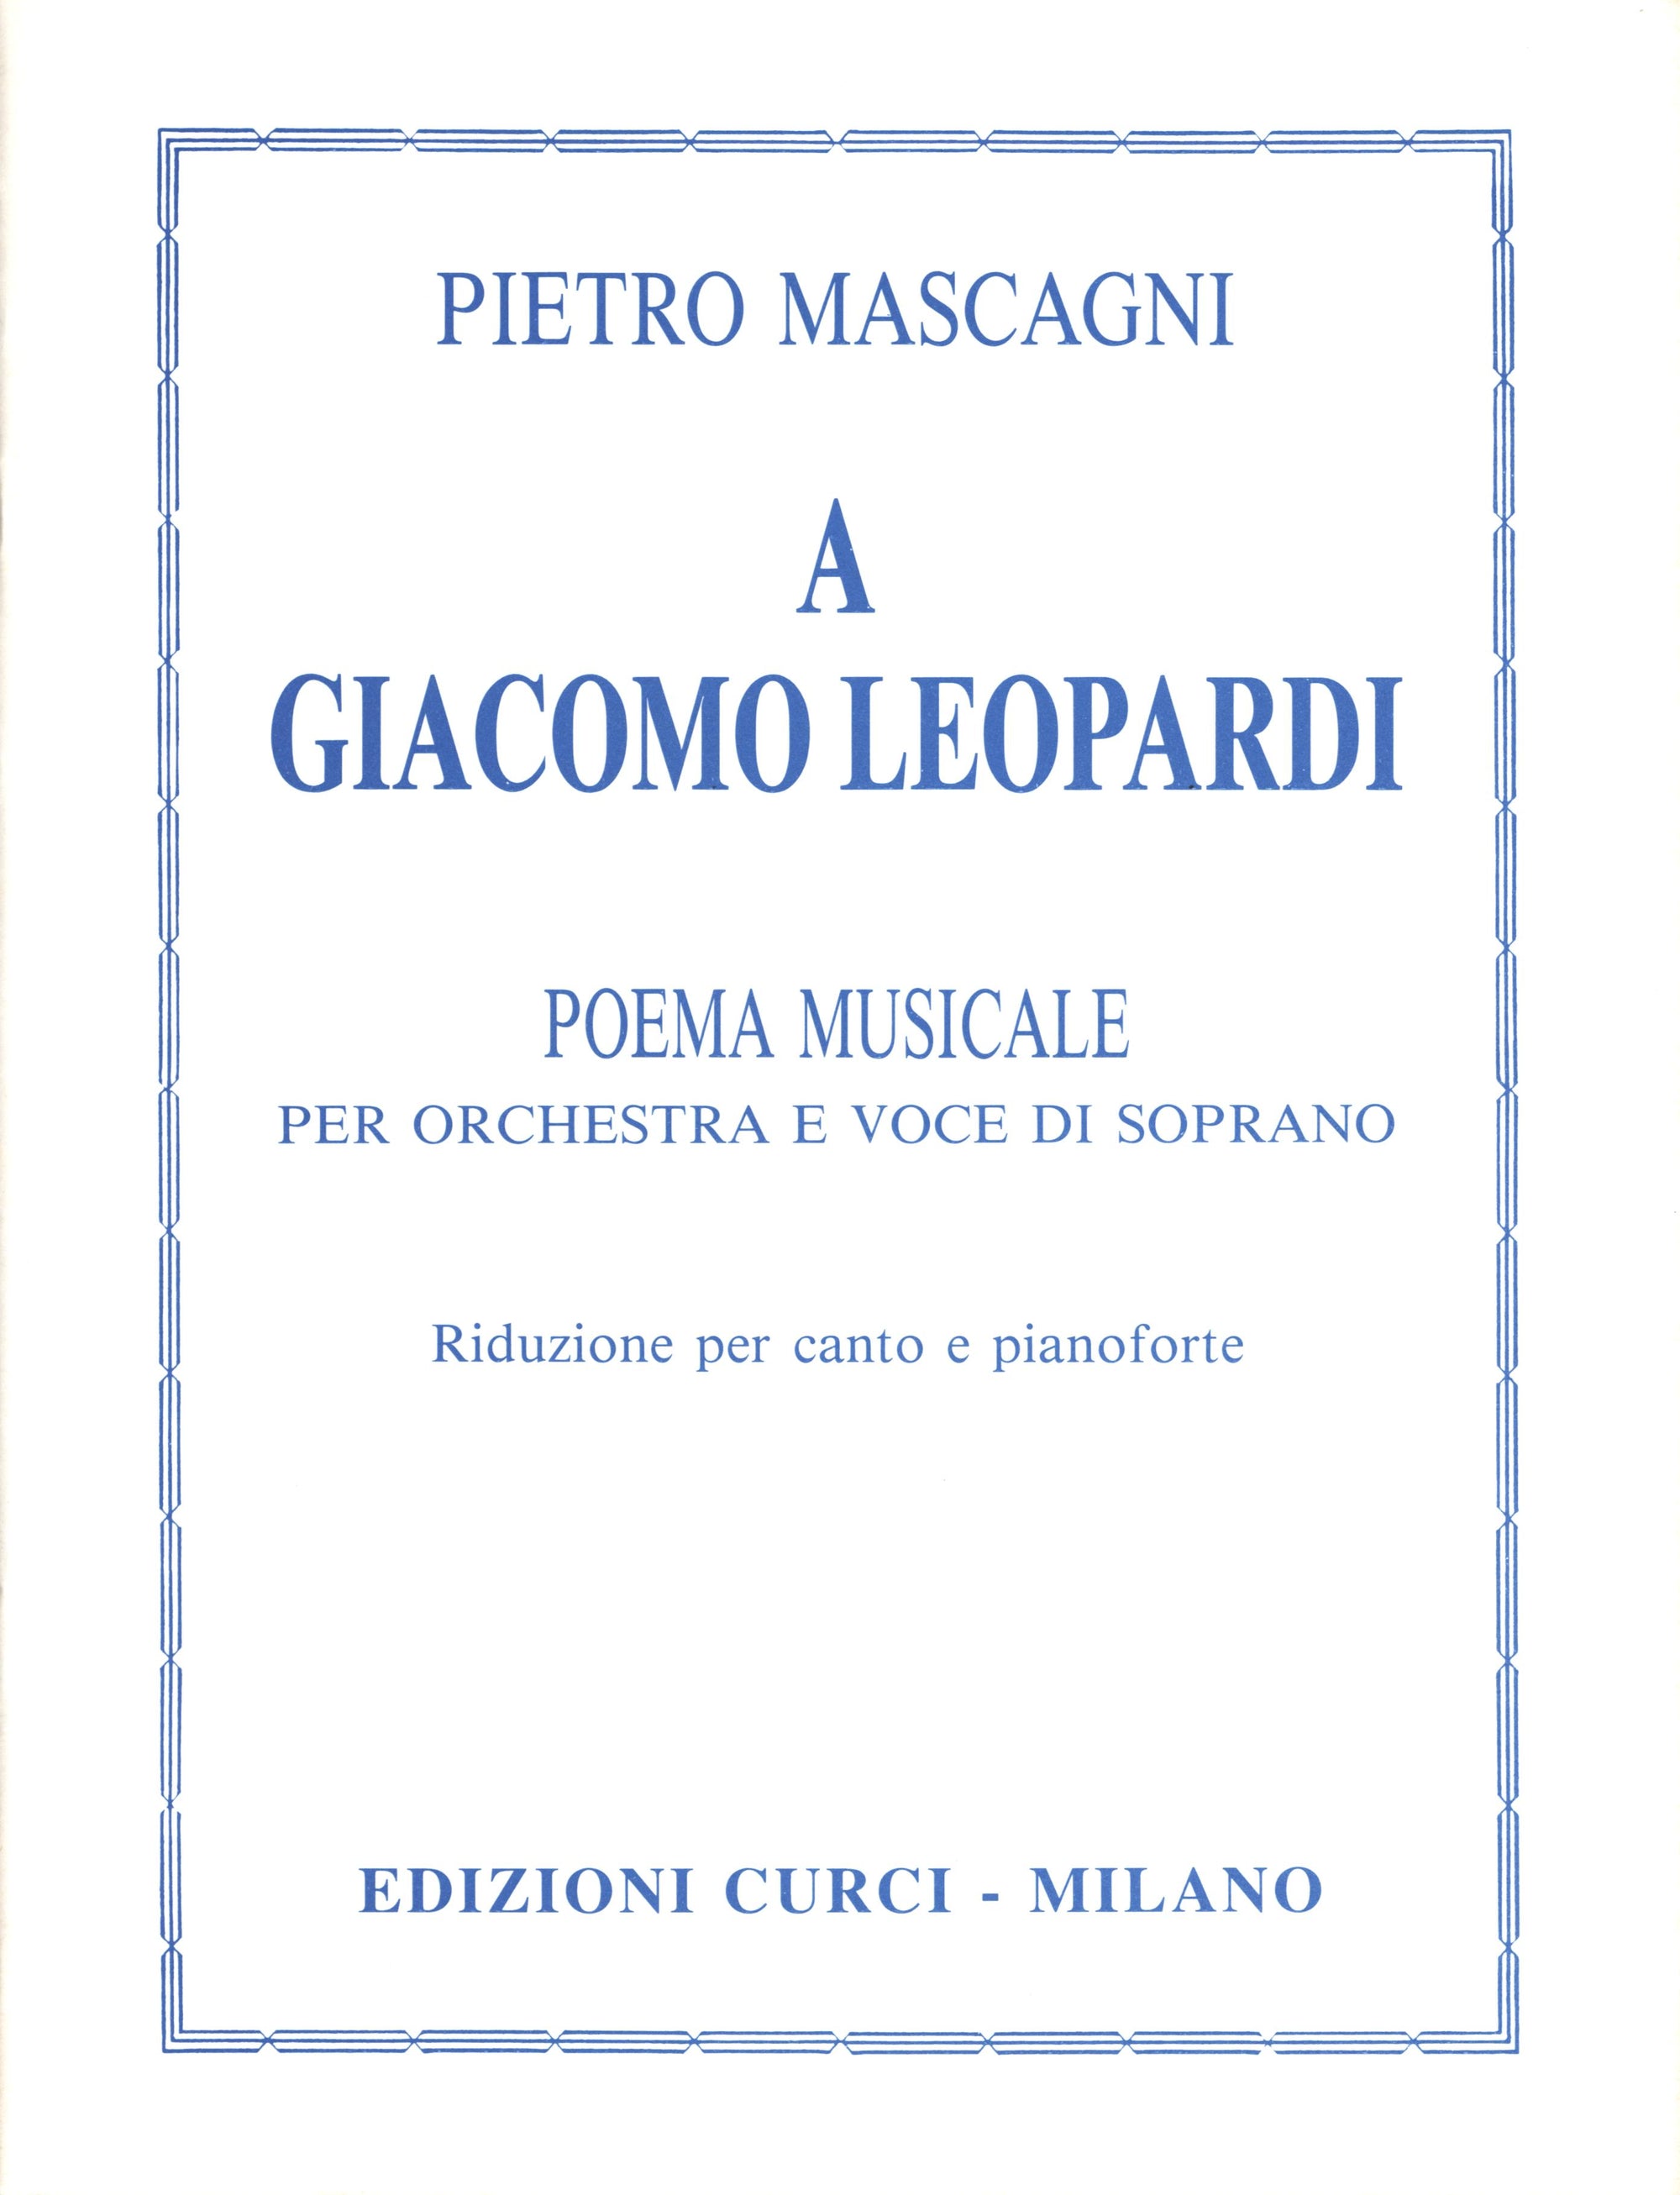 Mascagni: A Giacomo Leopardi